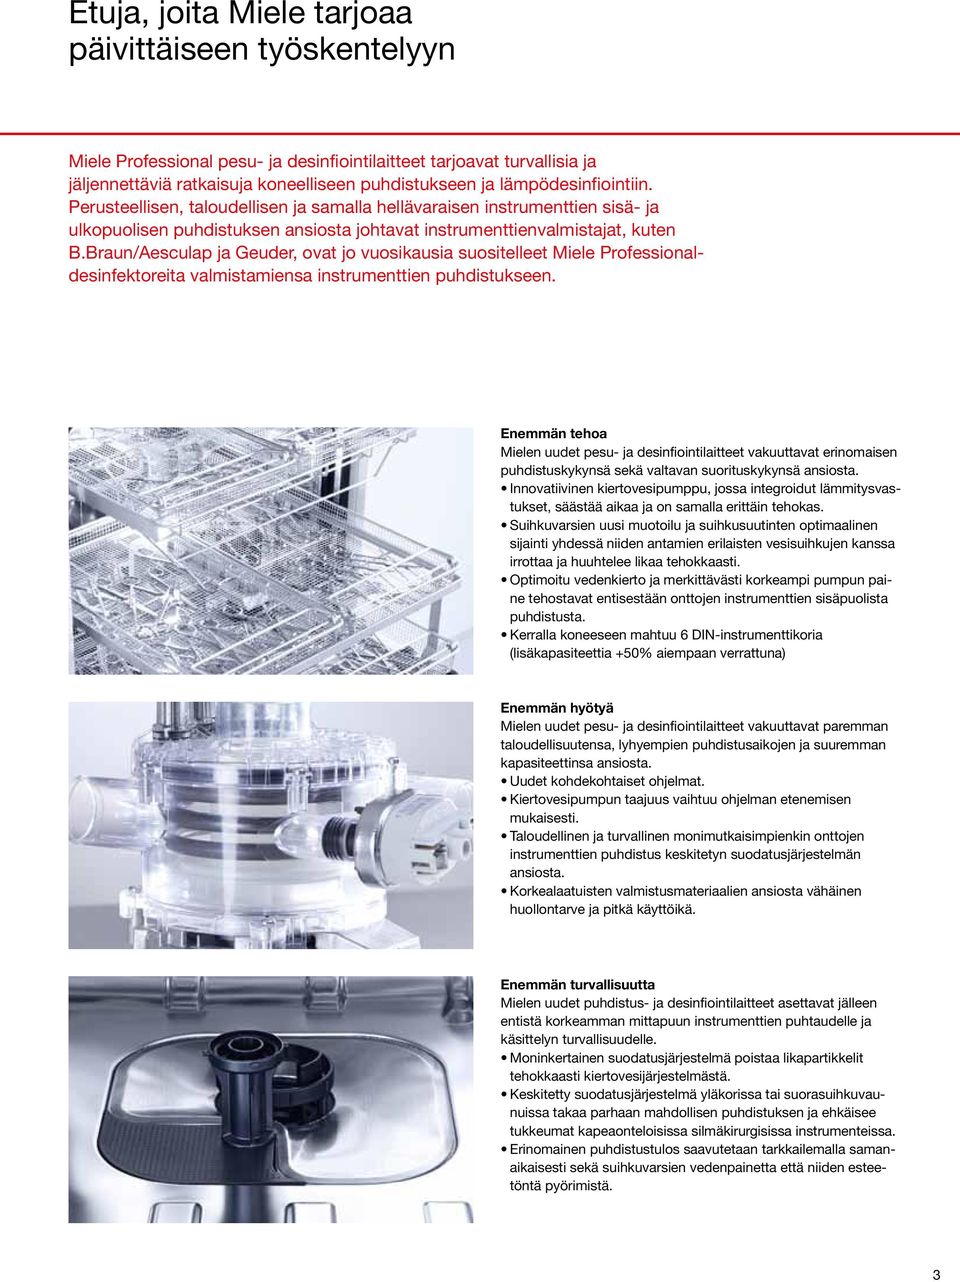 Braun/Aesculap ja Geuder, ovat jo vuosikausia suositelleet Miele Professionaldesinfektoreita valmistamiensa instrumenttien puhdistukseen.